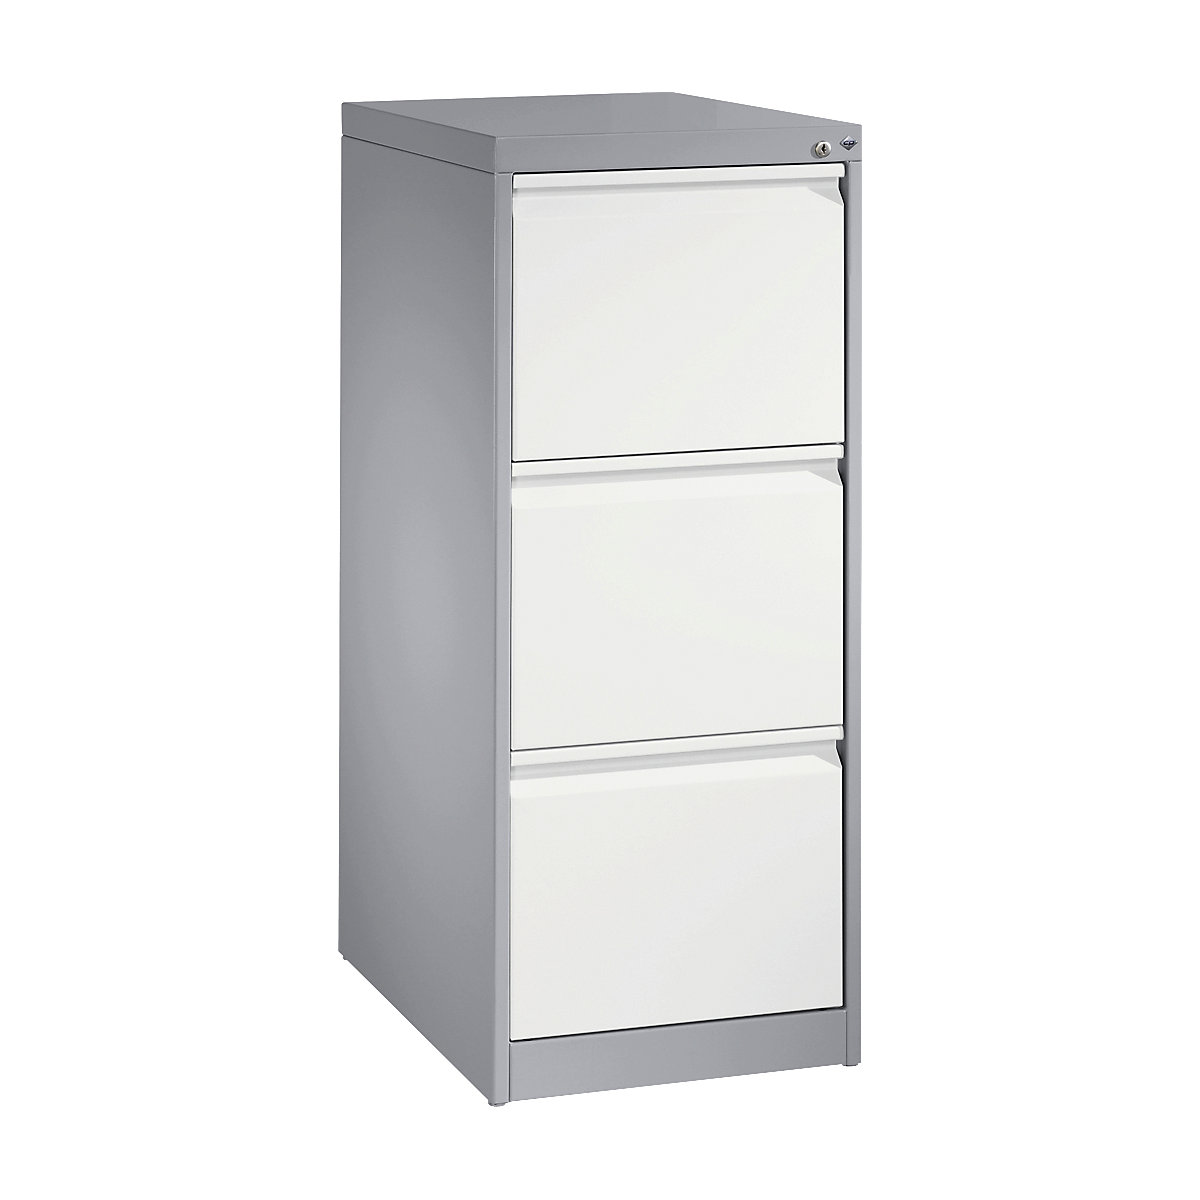 C+P – ACURADO suspension filing cabinet, 1 track, 3 drawers, white aluminium / traffic white